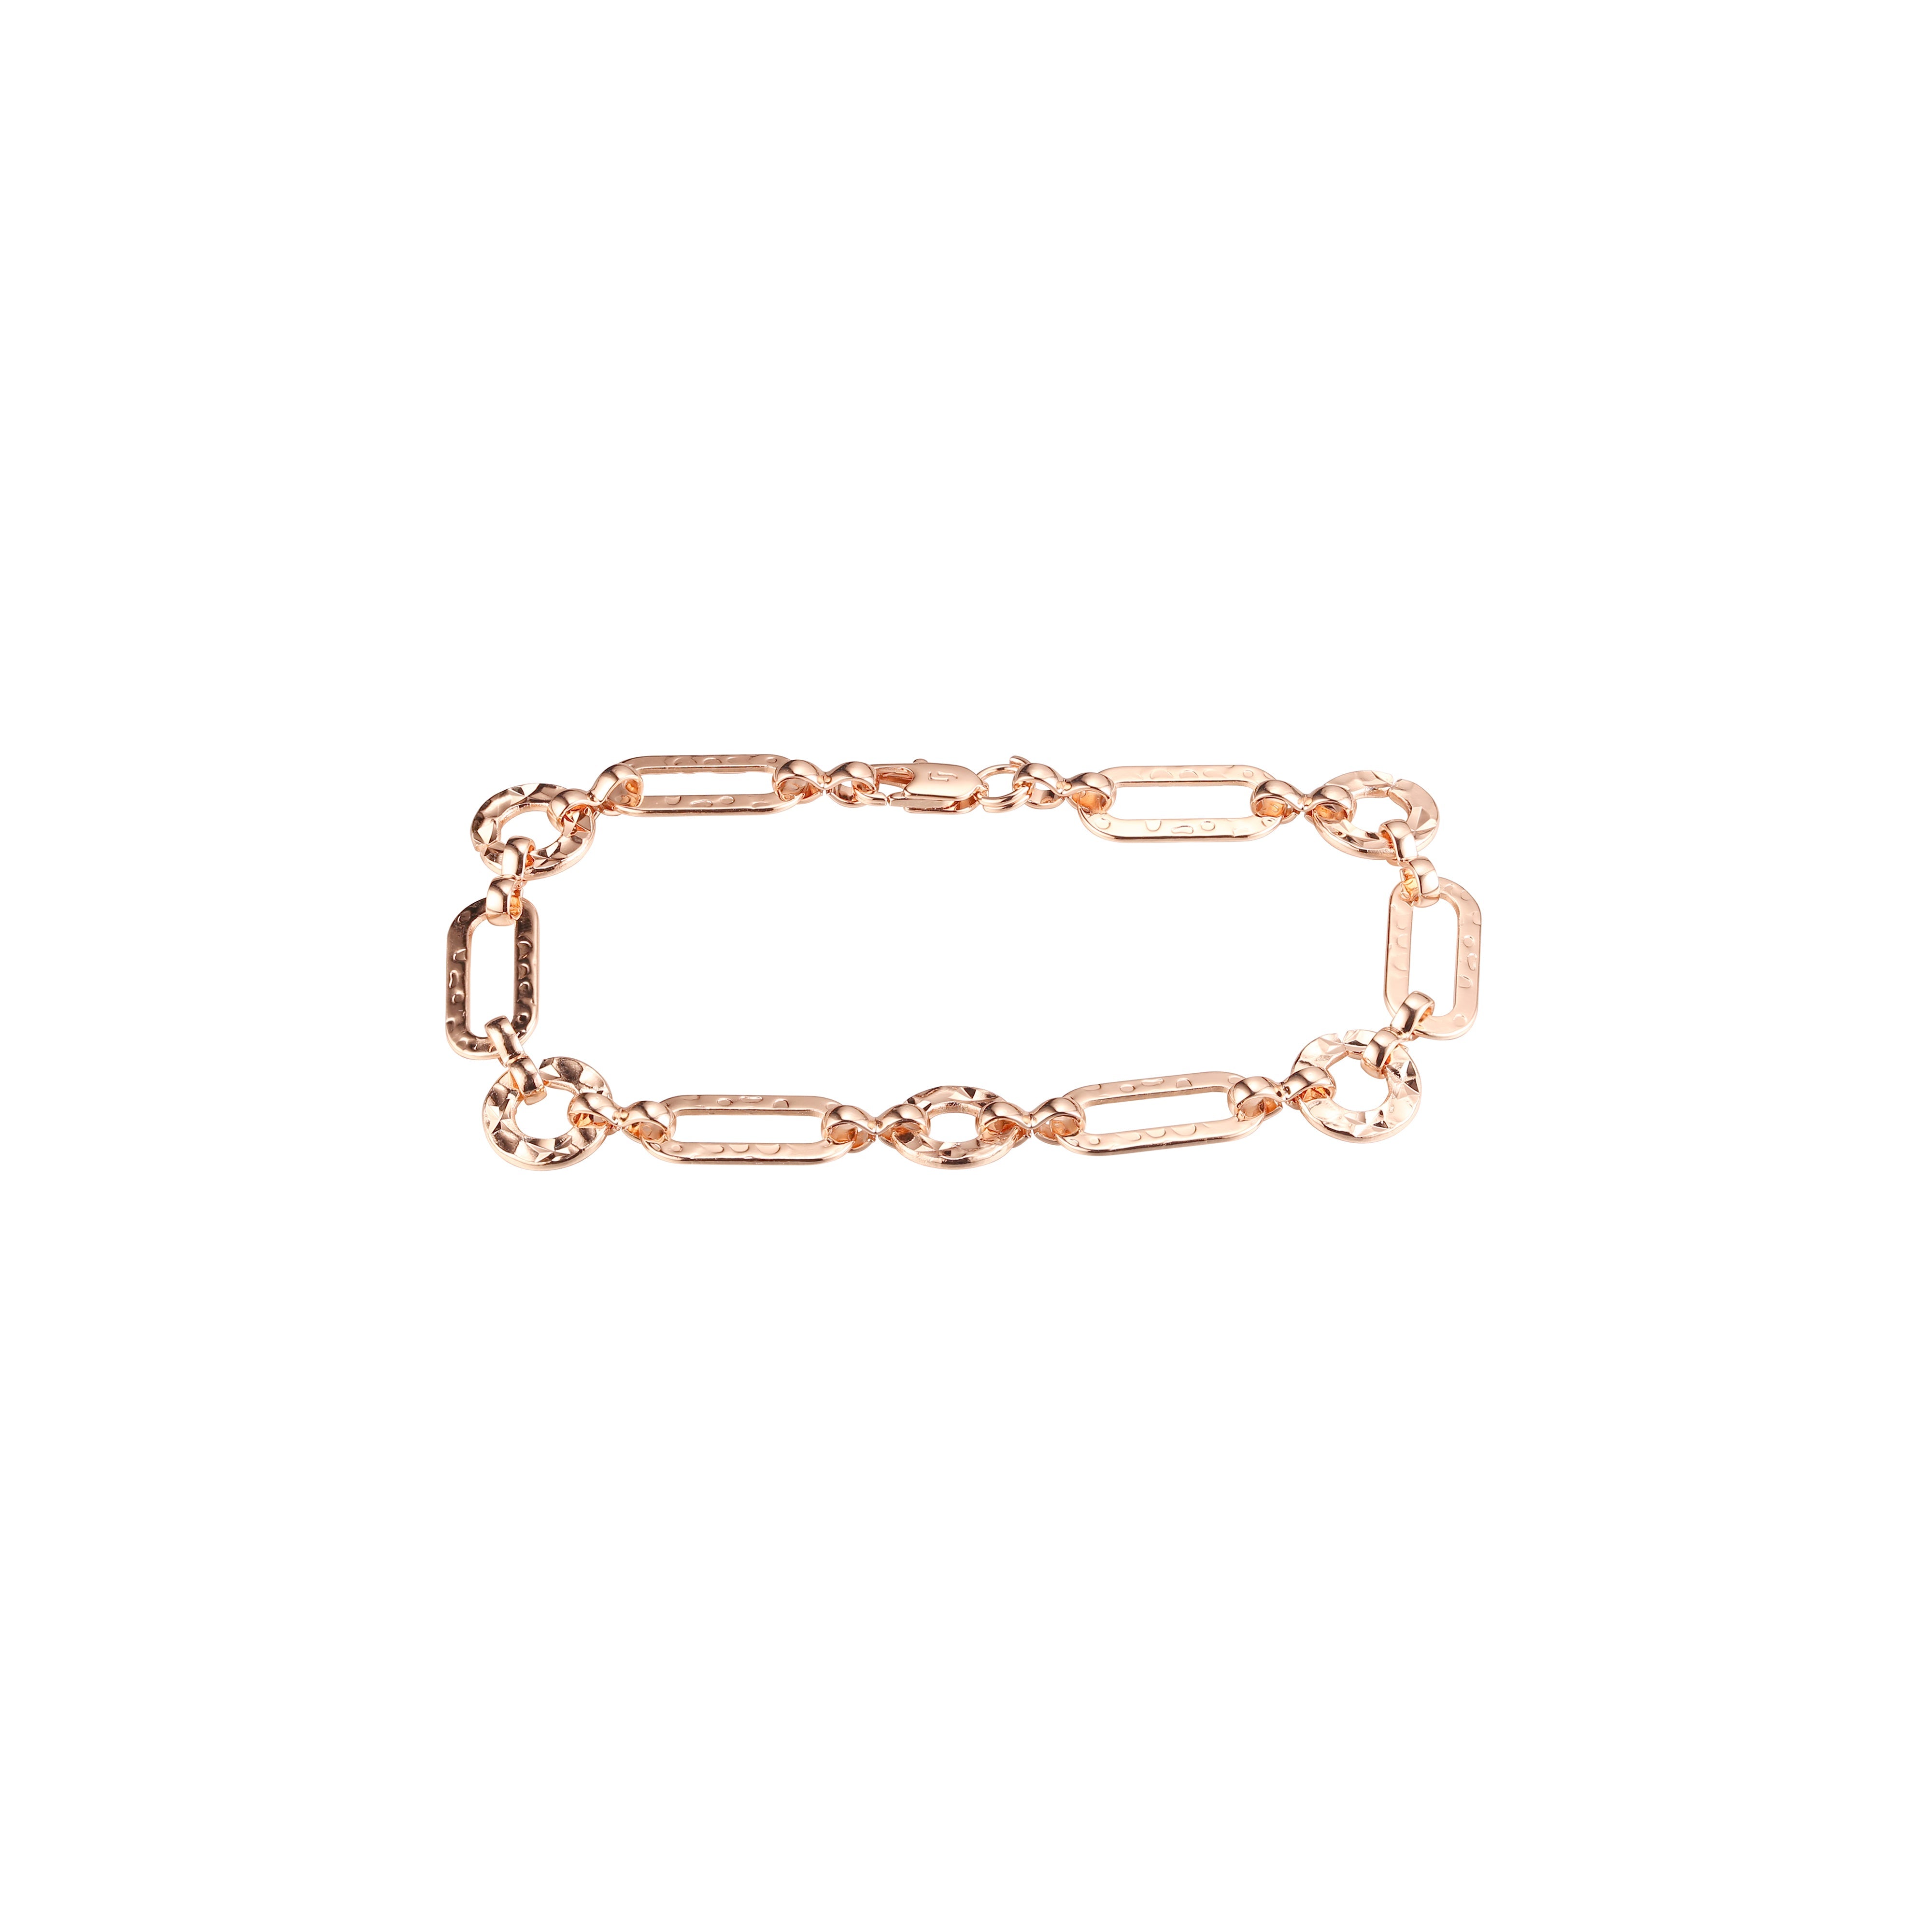 Причудливые браслеты со звеньями в виде скрепок, покрытые золотом 14 карат и розовым золотом